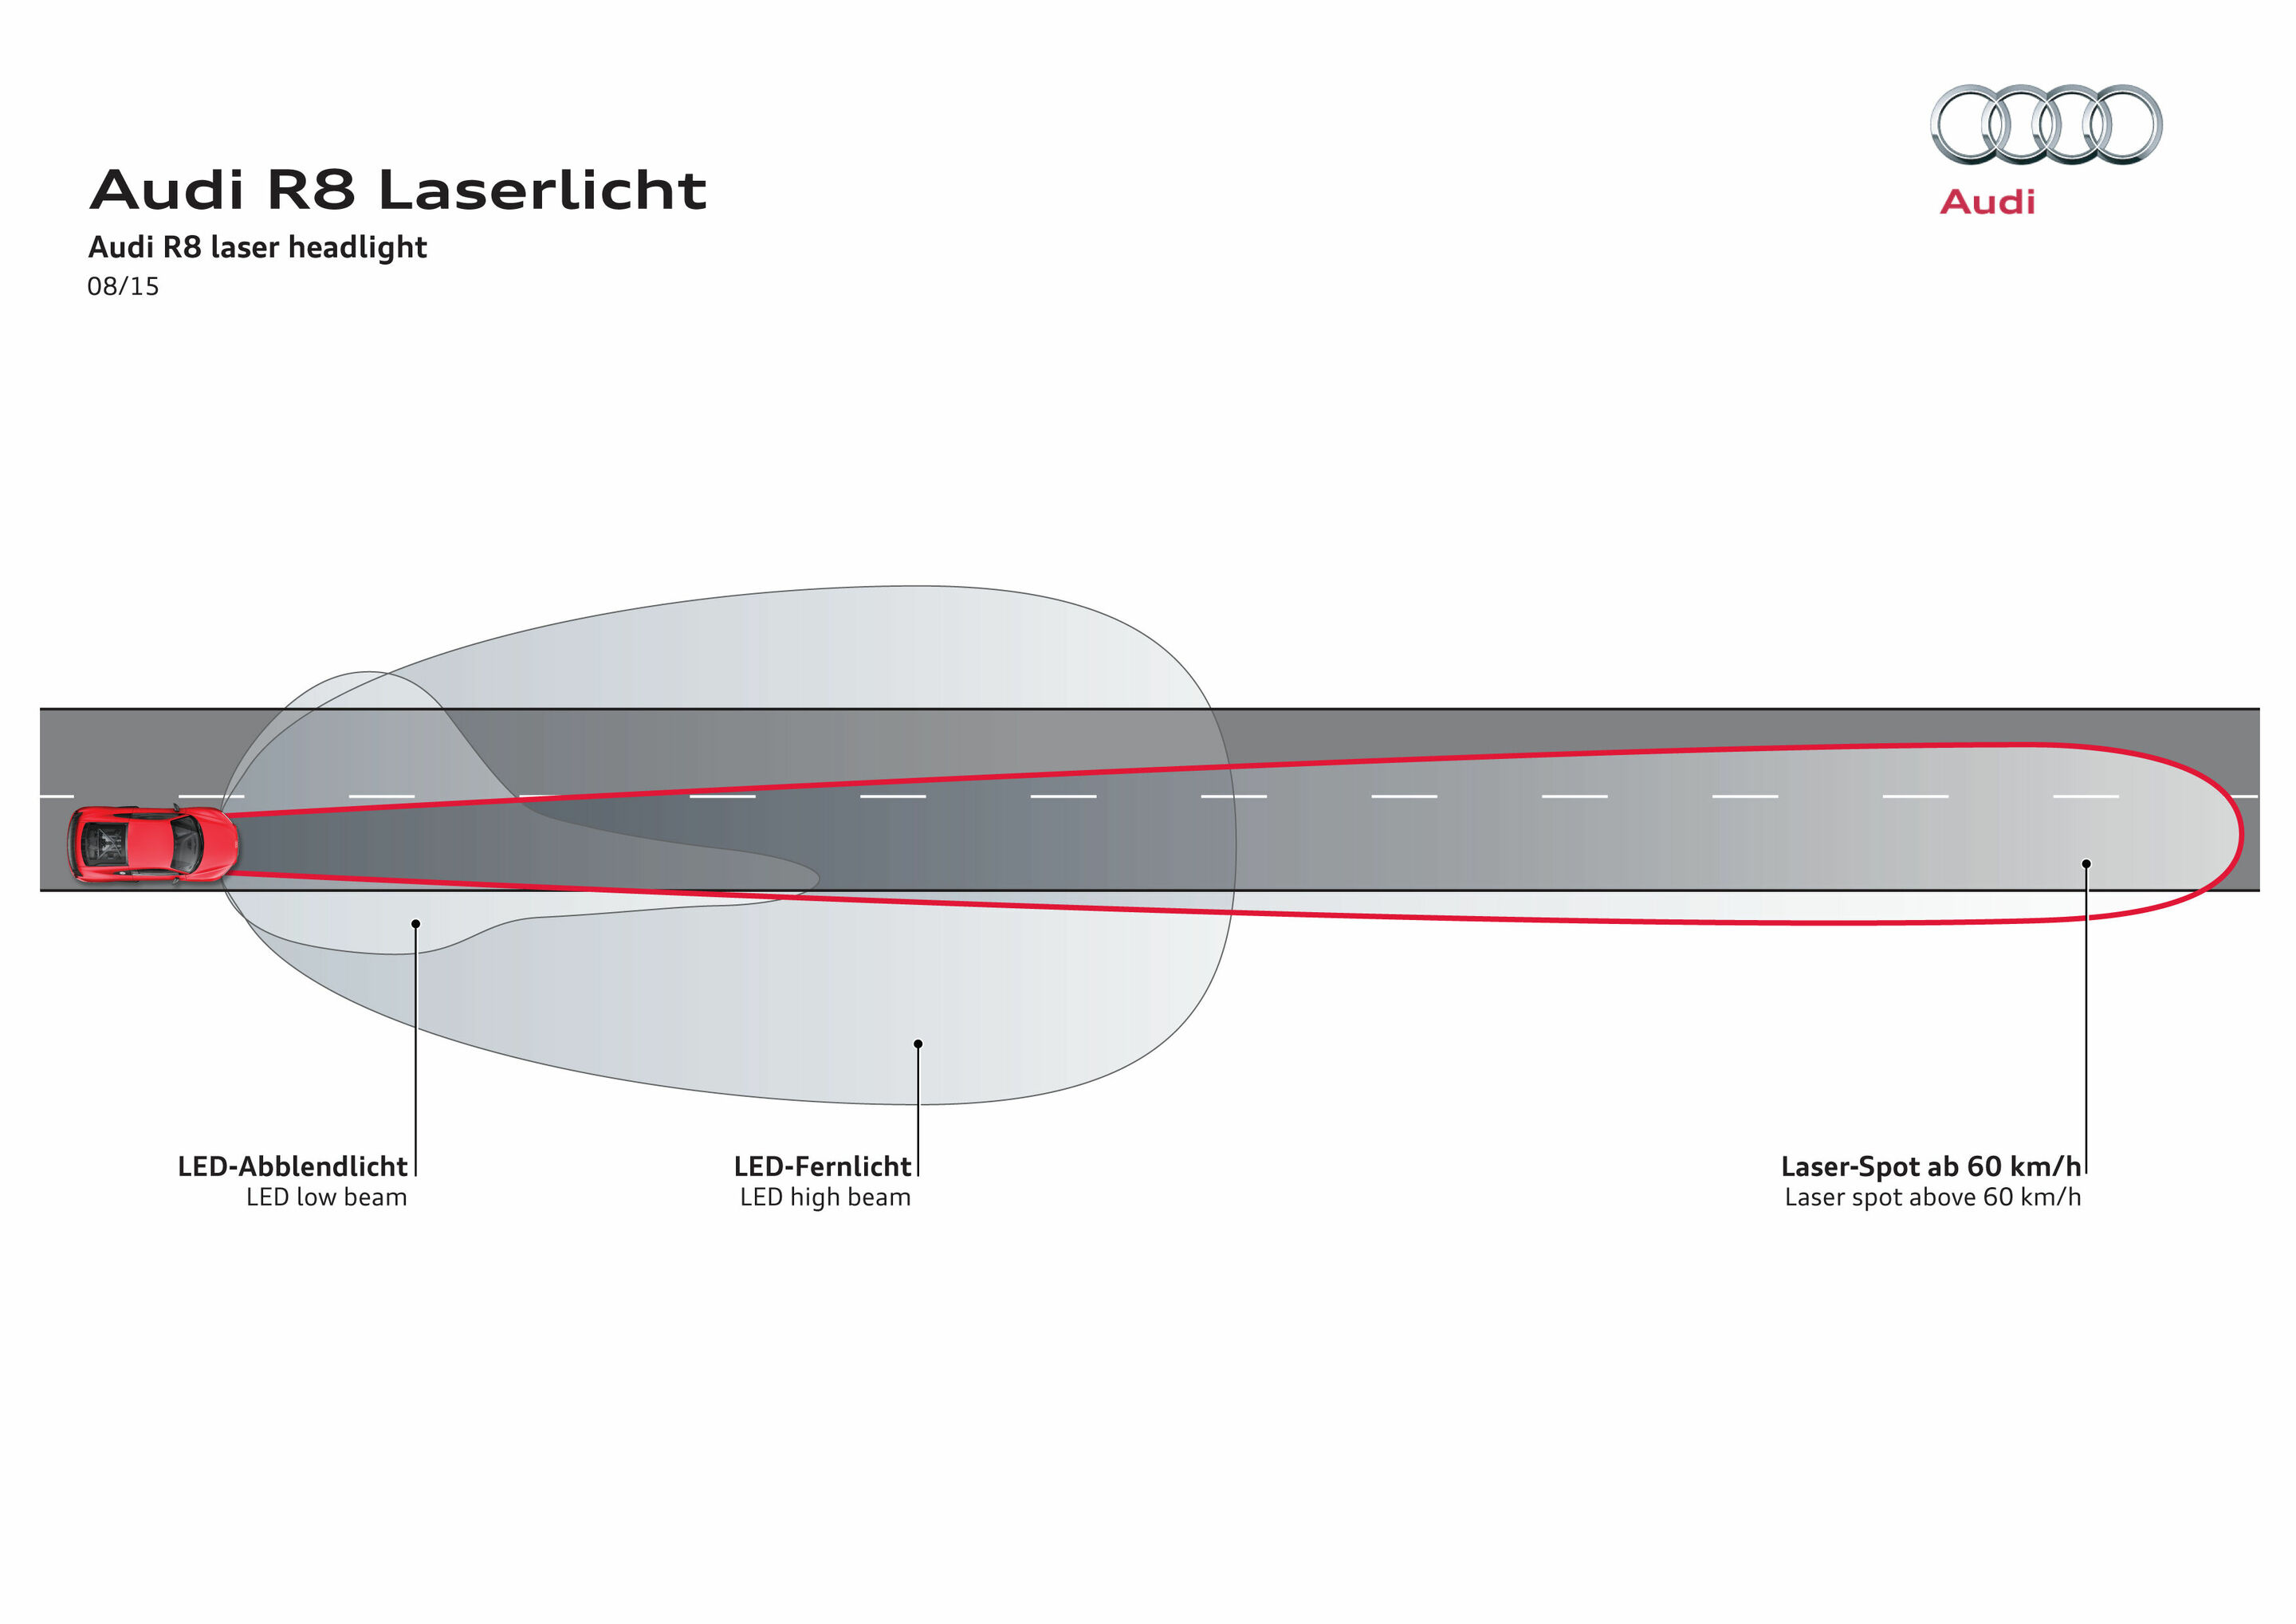 LED-Scheinwerfer mit Laser-Spot im neuen Audi R8